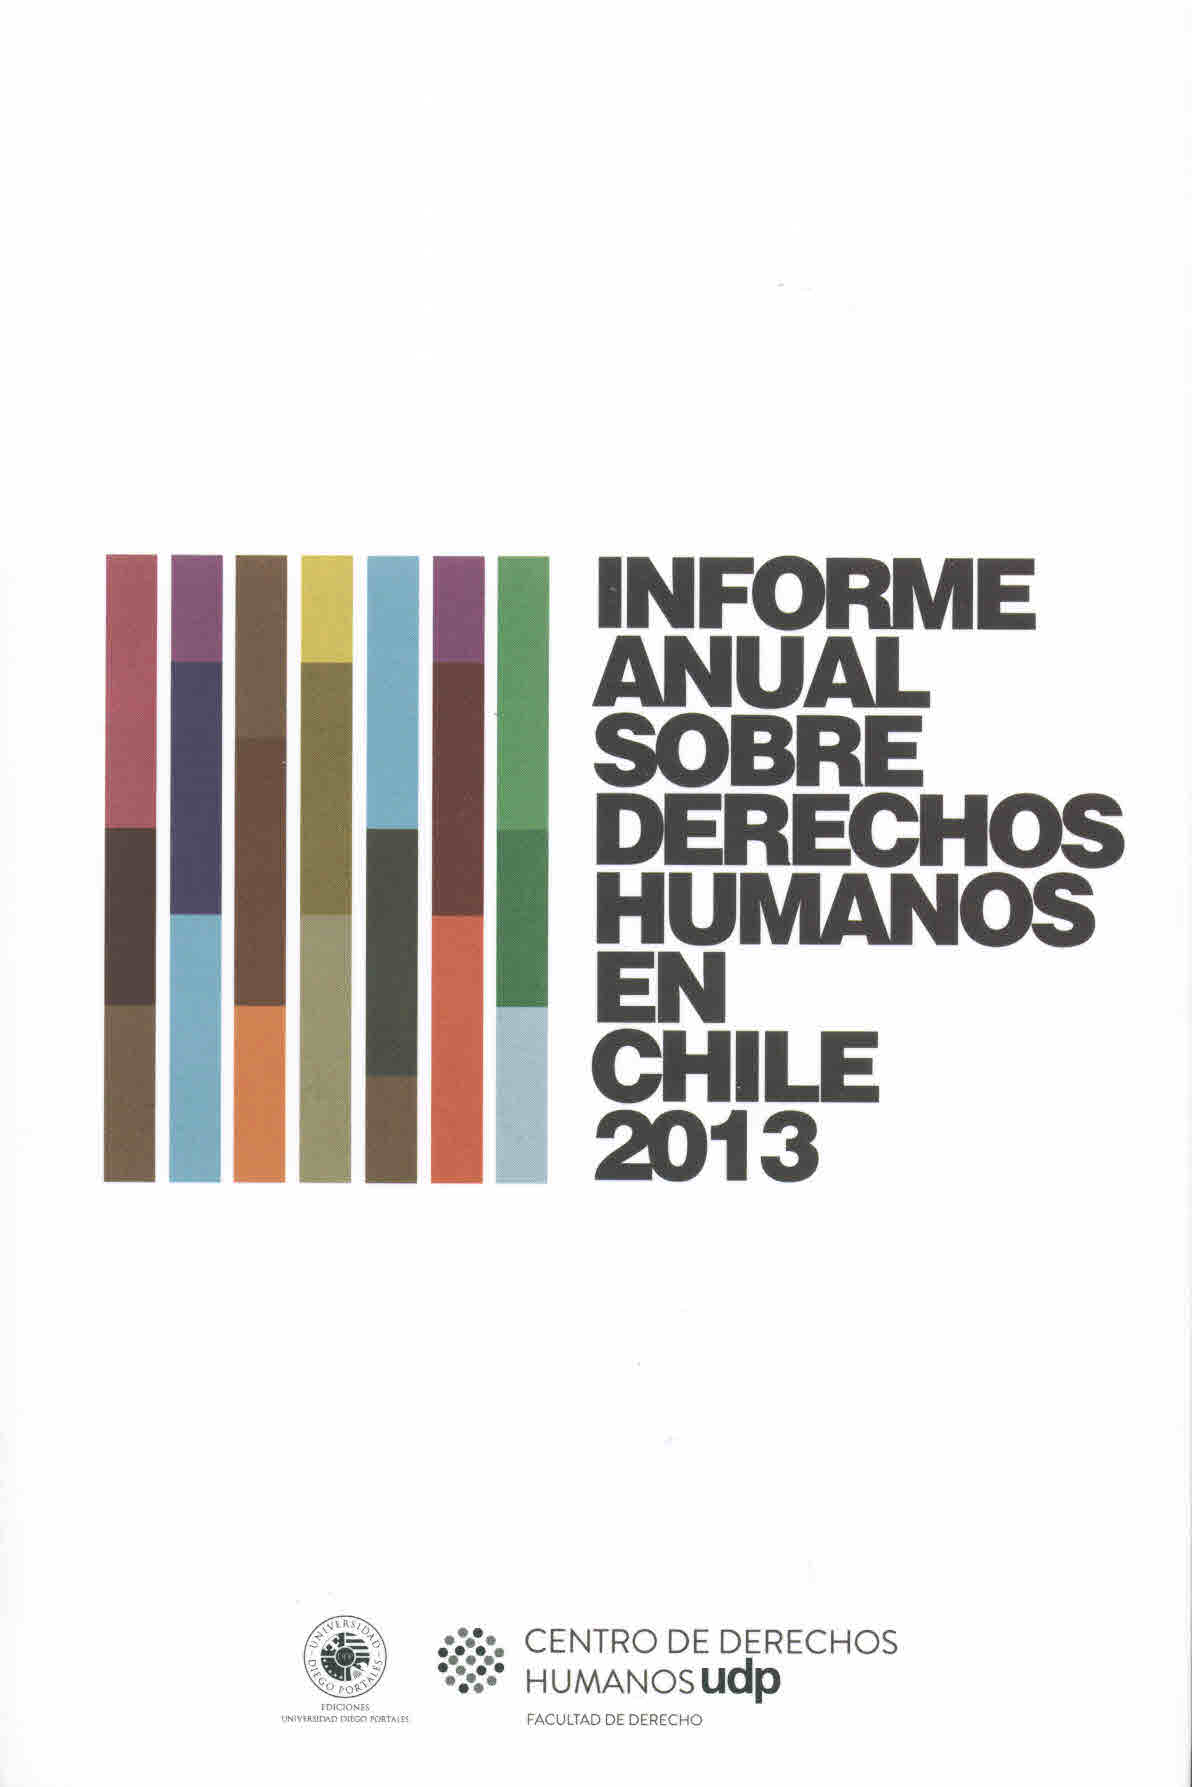 Informe anual sobre derechos humanos en Chile 2013